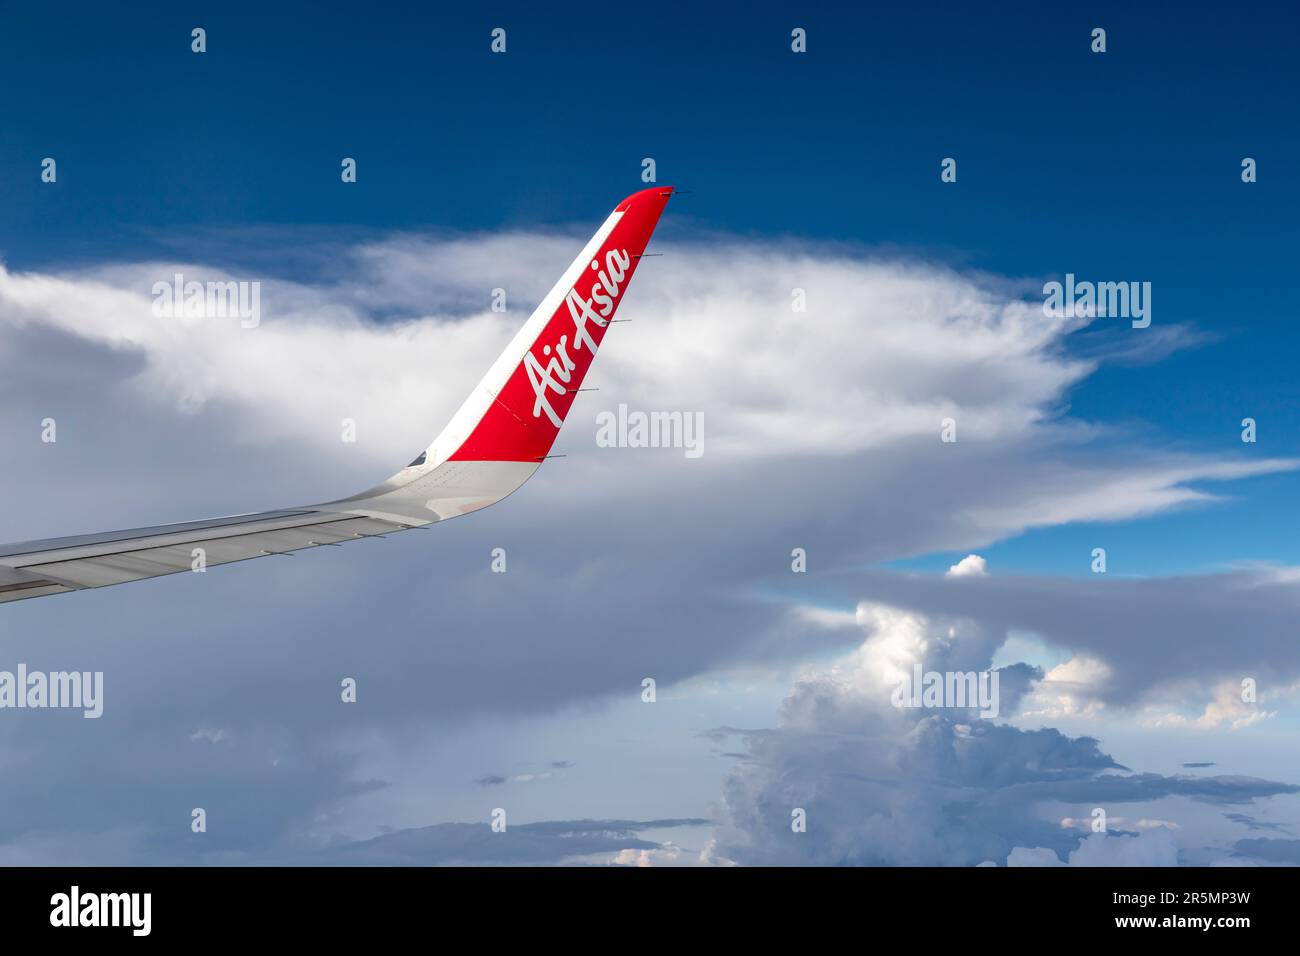 Bangkok Thailandia - 30 marzo 2019: Il logo del marchio sull'ala di AirAsia, una popolare compagnia aerea low-cost in molti paesi, sta salendo nel cielo agai Foto Stock